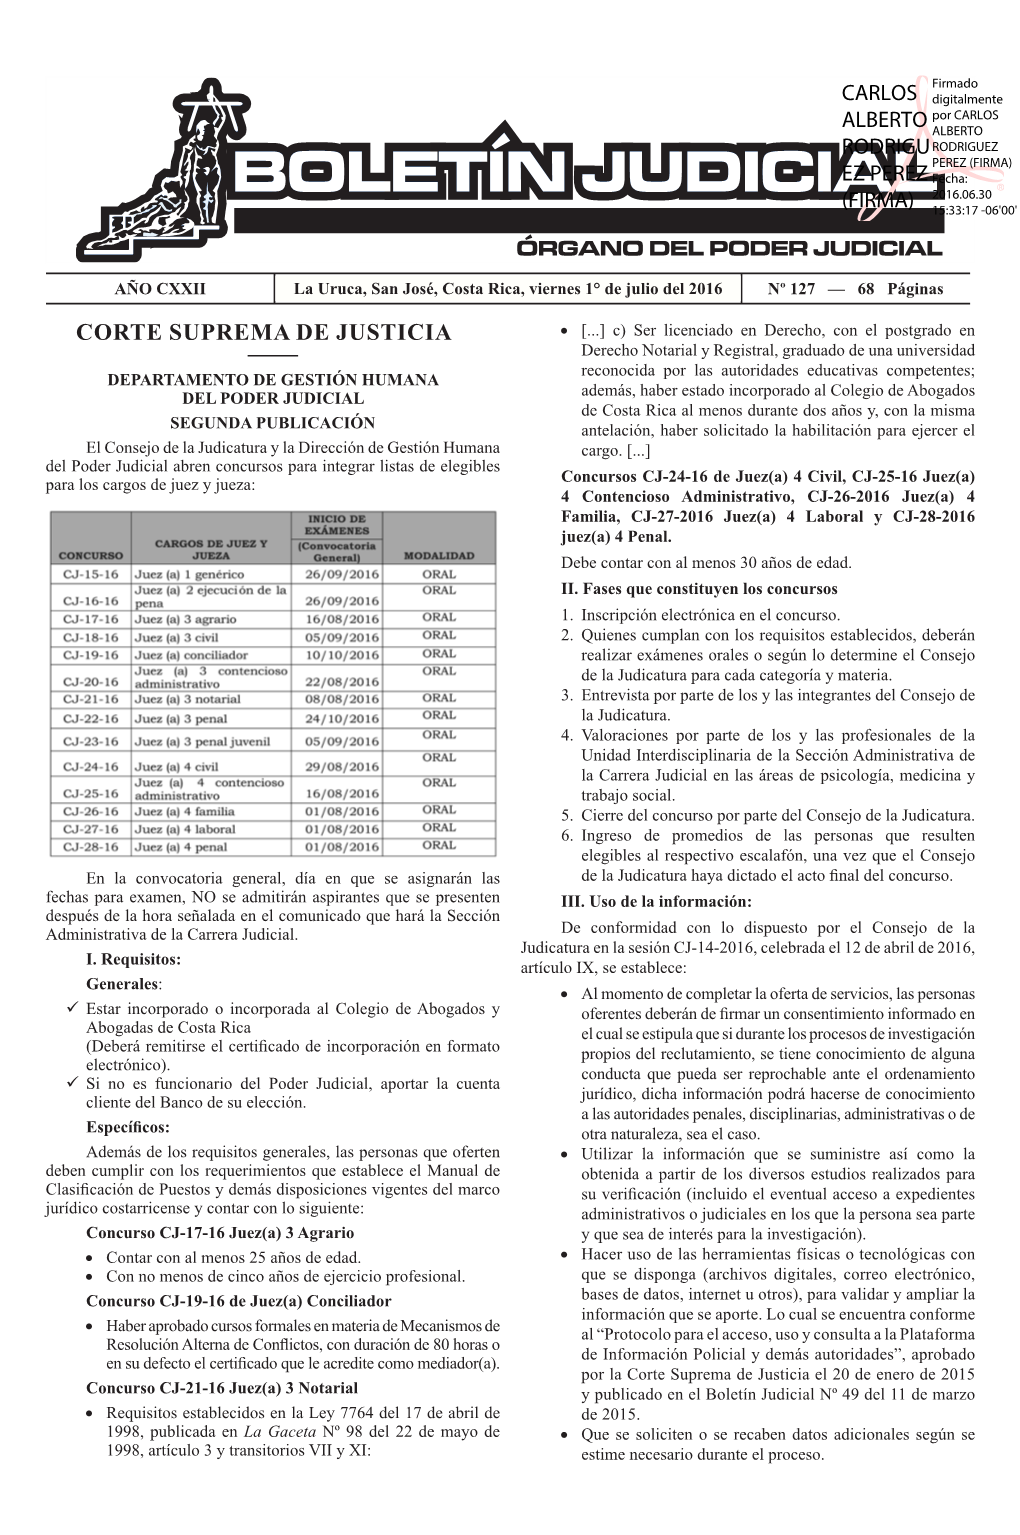 BOLETÍN JUDICIAL N° 127 De La Fecha 01 07 2016